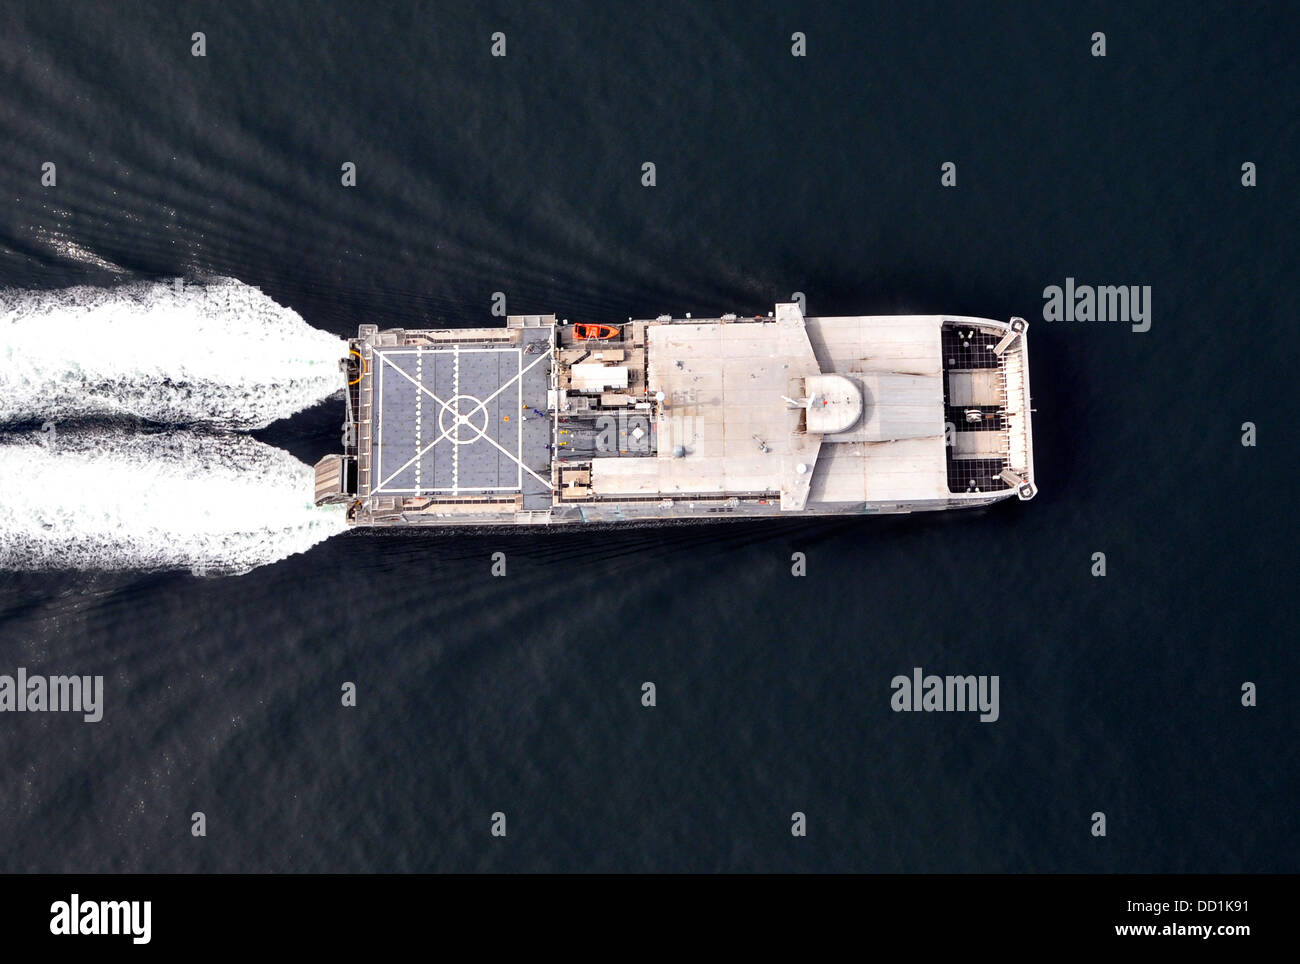 Comando de Transporte Marítimo Militar de la Marina de EE.UU. de alta velocidad conjunta buque USNS Spearhead realiza ensayos de alta velocidad El 20 de agosto de 2013 frente a las costas de Virginia. El USNS Spearhead alcanzó una velocidad de 40 nudos durante la prueba. Foto de stock